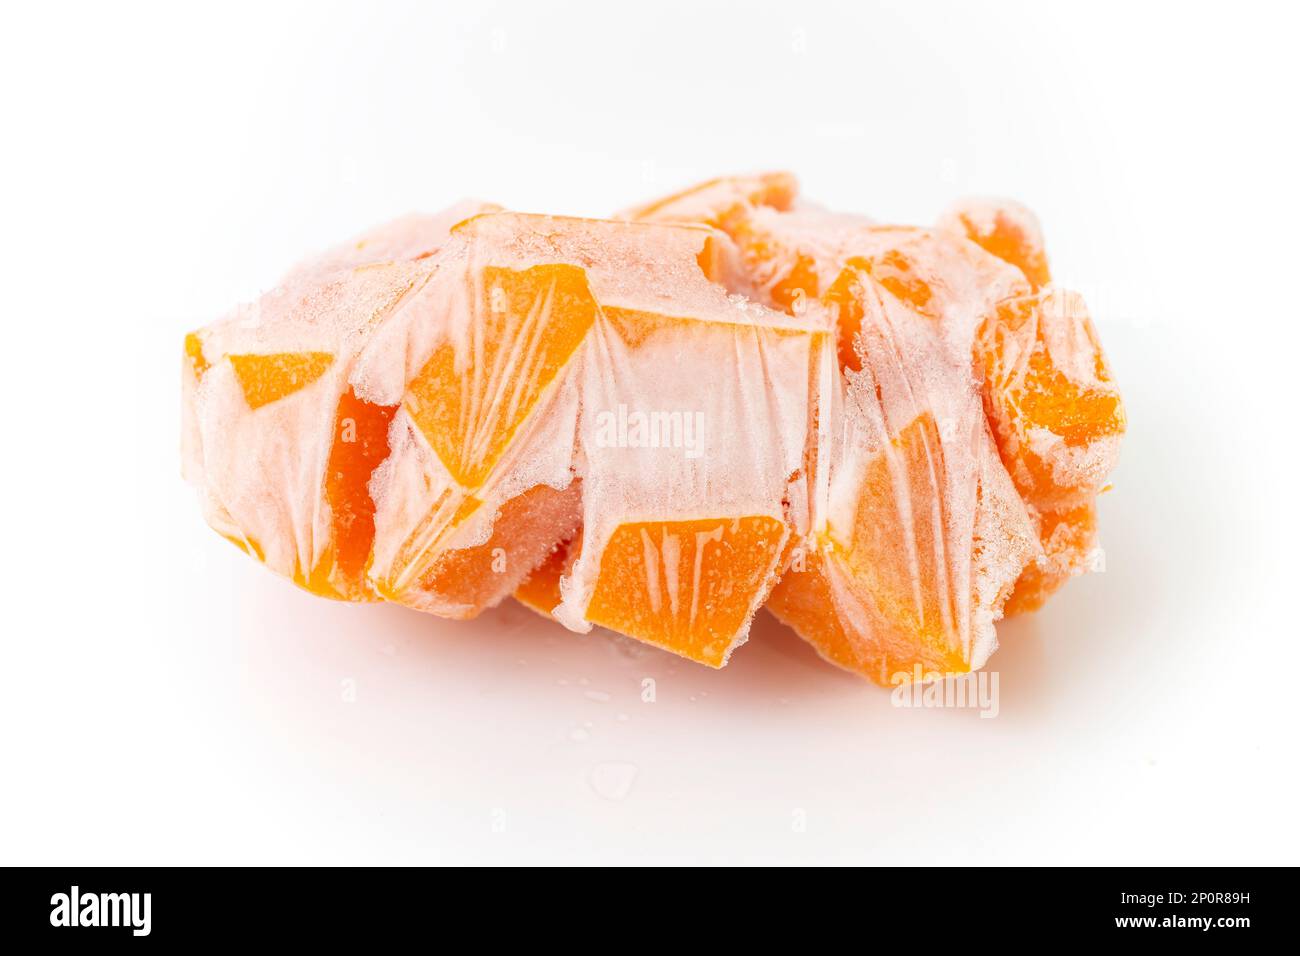 Zucca d'arancia tagliata a cubetti, e congelata per la conservazione, primo piano isolato su sfondo bianco Foto Stock